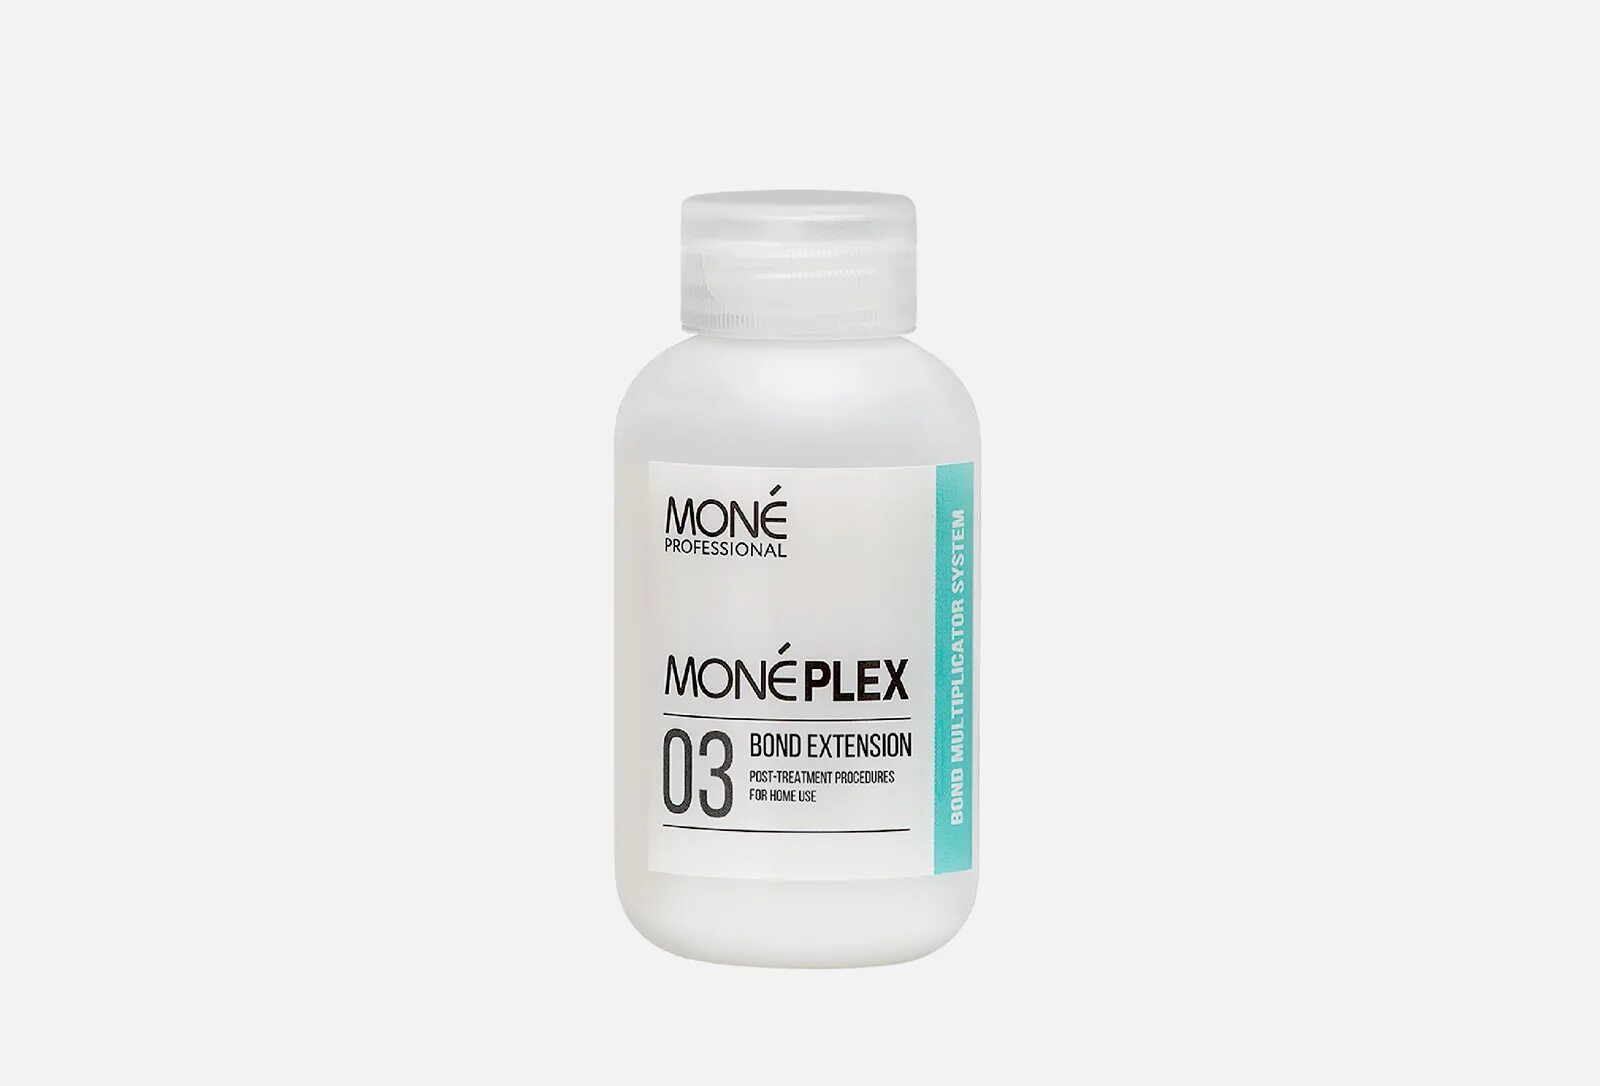 Mone спрей. Mone professional спрей. Mone professional бренд. Moneplex 05 Shampoo шампунь для защиты и восстановления волос. Лосьон,модификатор Mone.